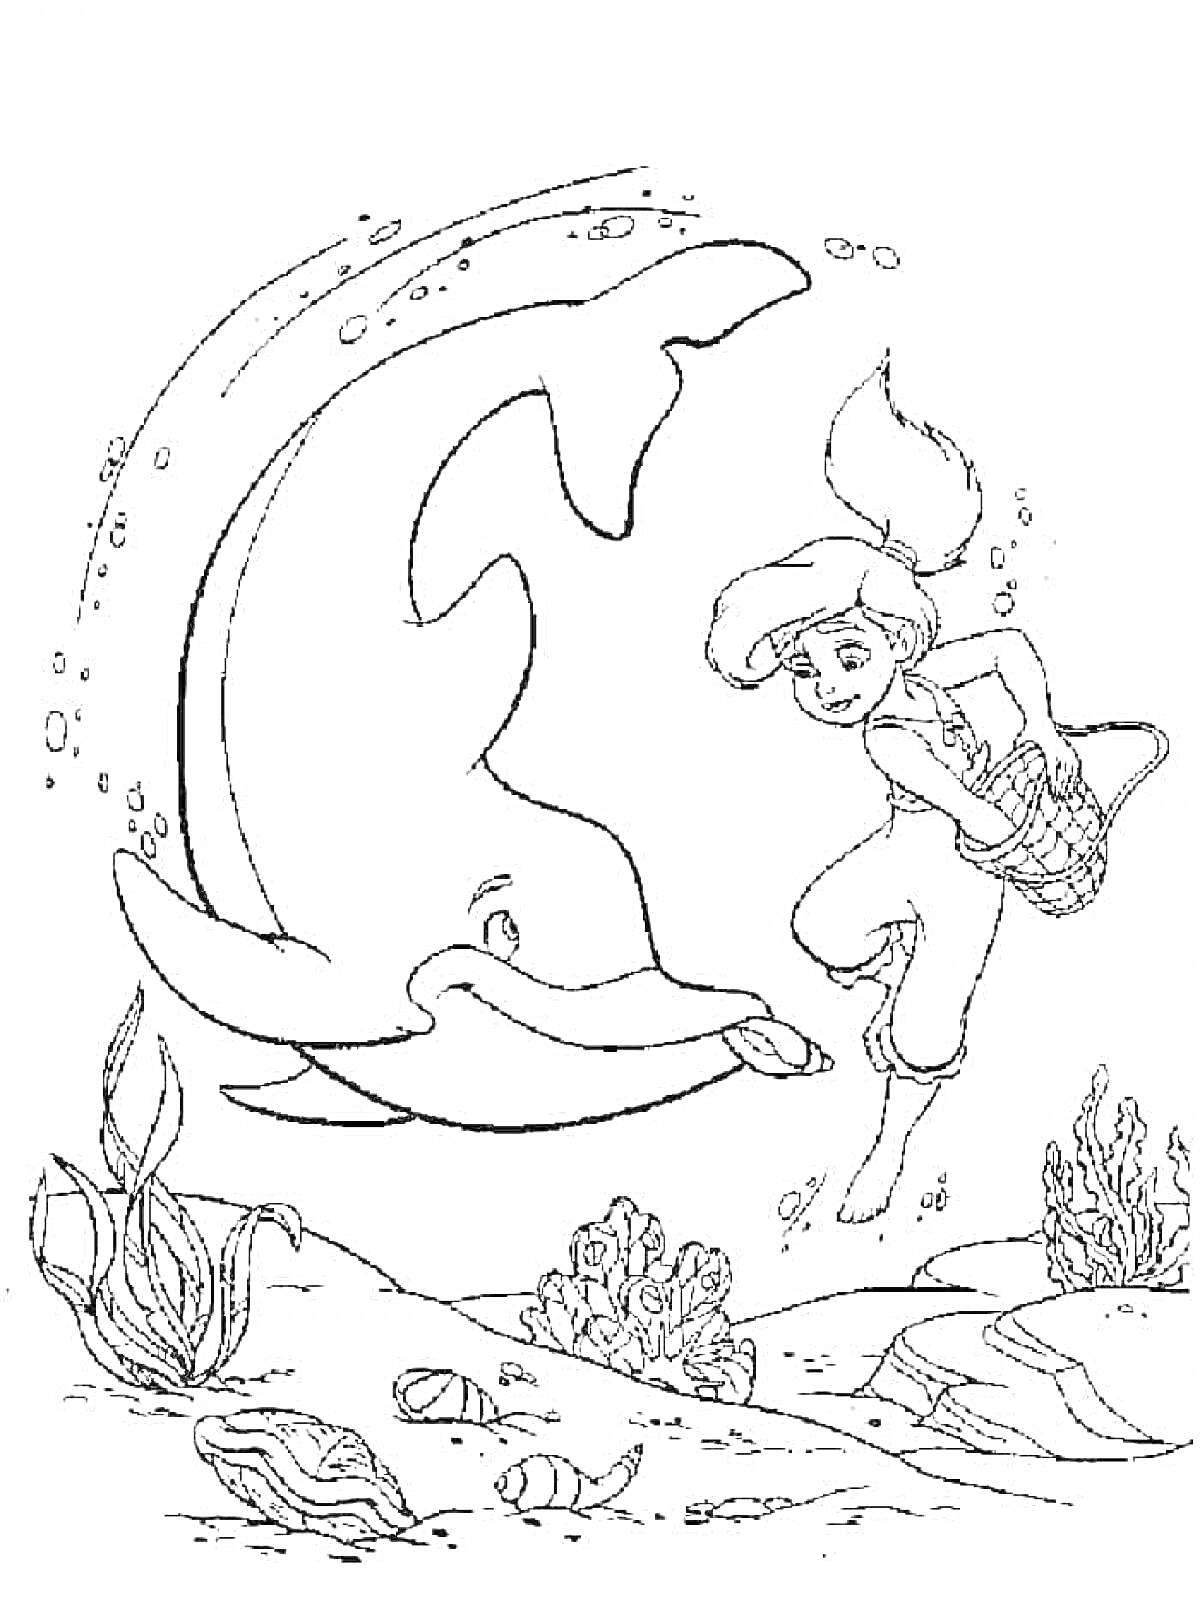 Раскраска Мелоди и дельфин под водой с рыбами и водорослями